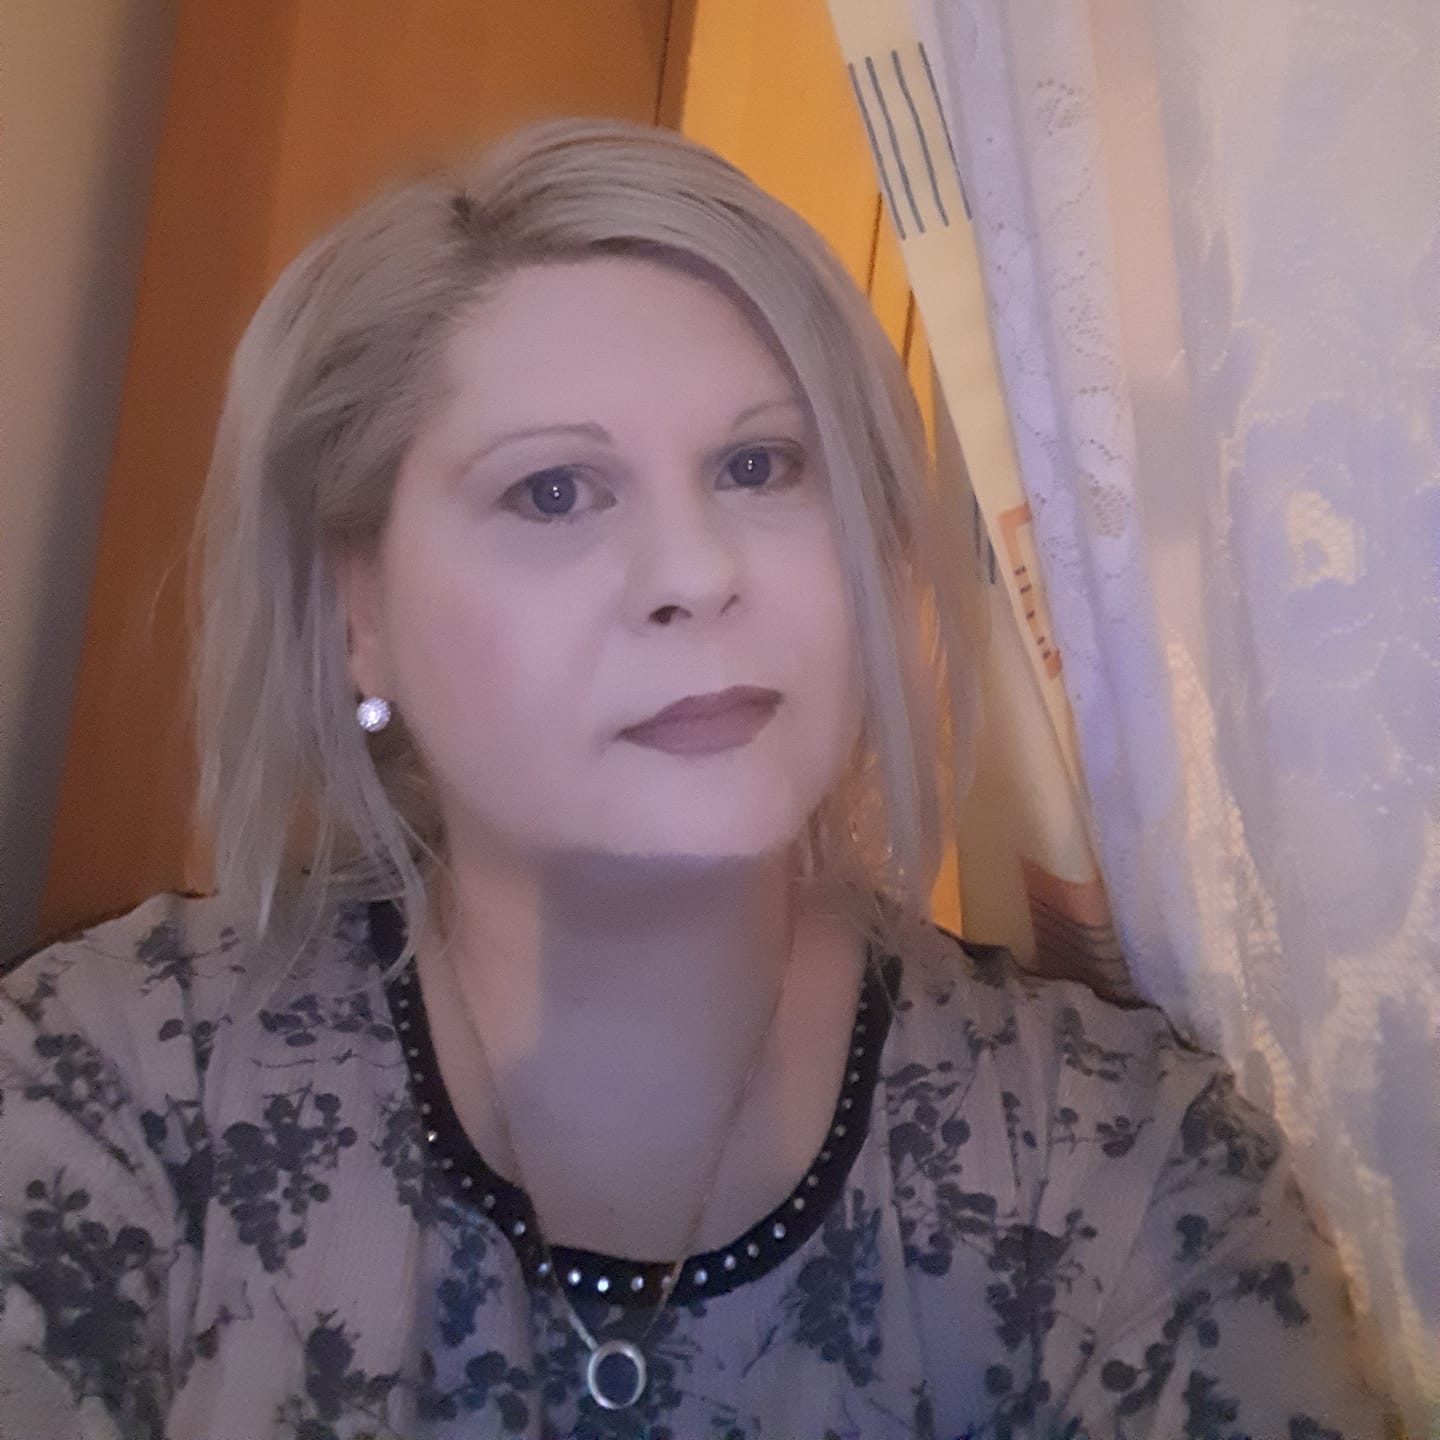 Pacientă bolnavă de cancer, refuzată la internare la Institutul Oncologic Cluj pe motiv de test Covid, deși era asimptomatică și trecută prin boală. Medicul că nevaccinații sunt „tâmpiți” și „idioți”